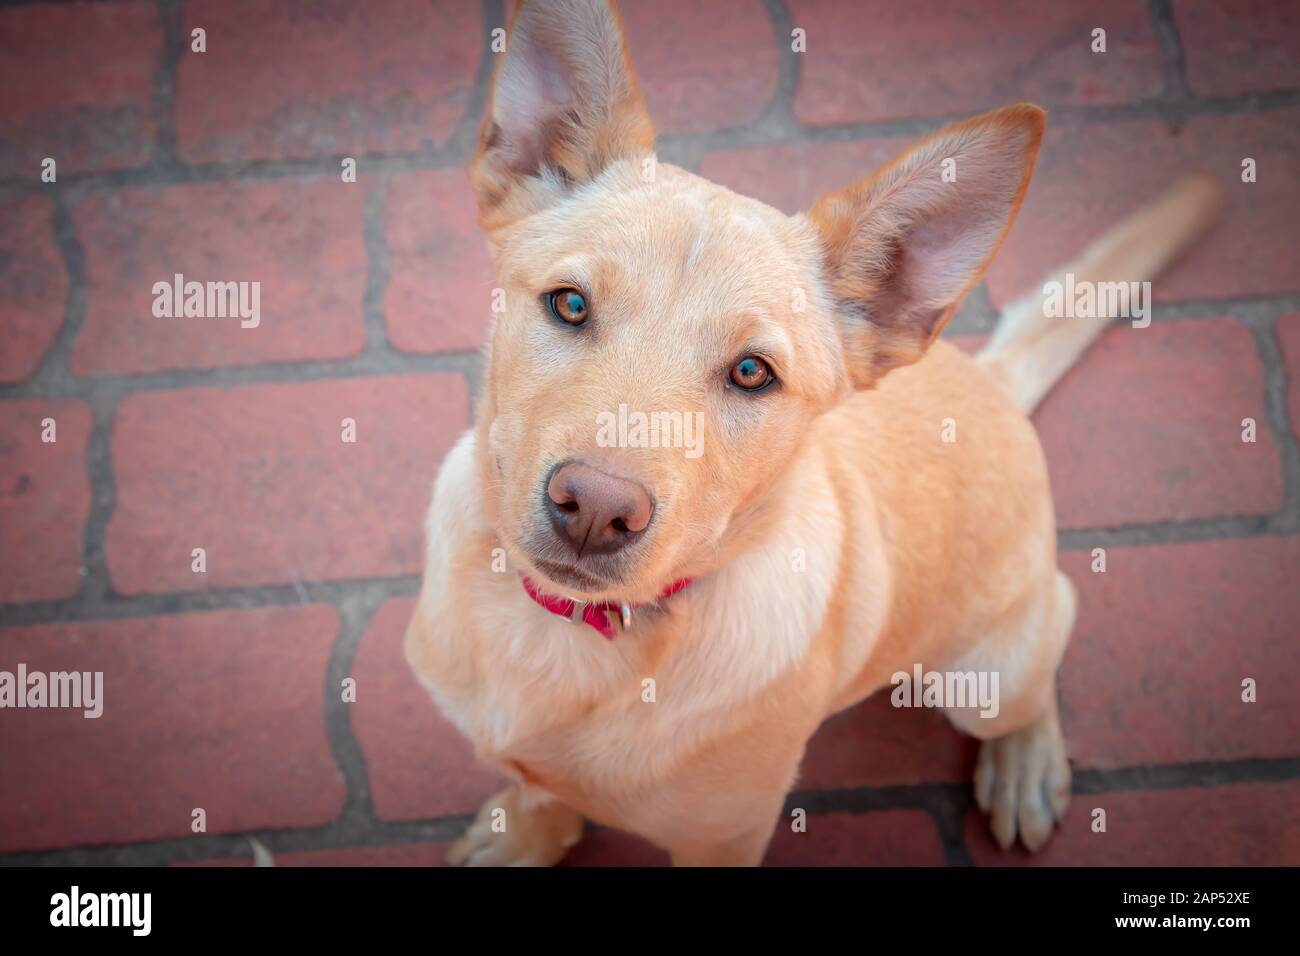 Alert gehorsam blass tan Hund mit rotem Kragen sitzend und mit hellen Augen und Ausdruck nach oben schauend Stockfoto